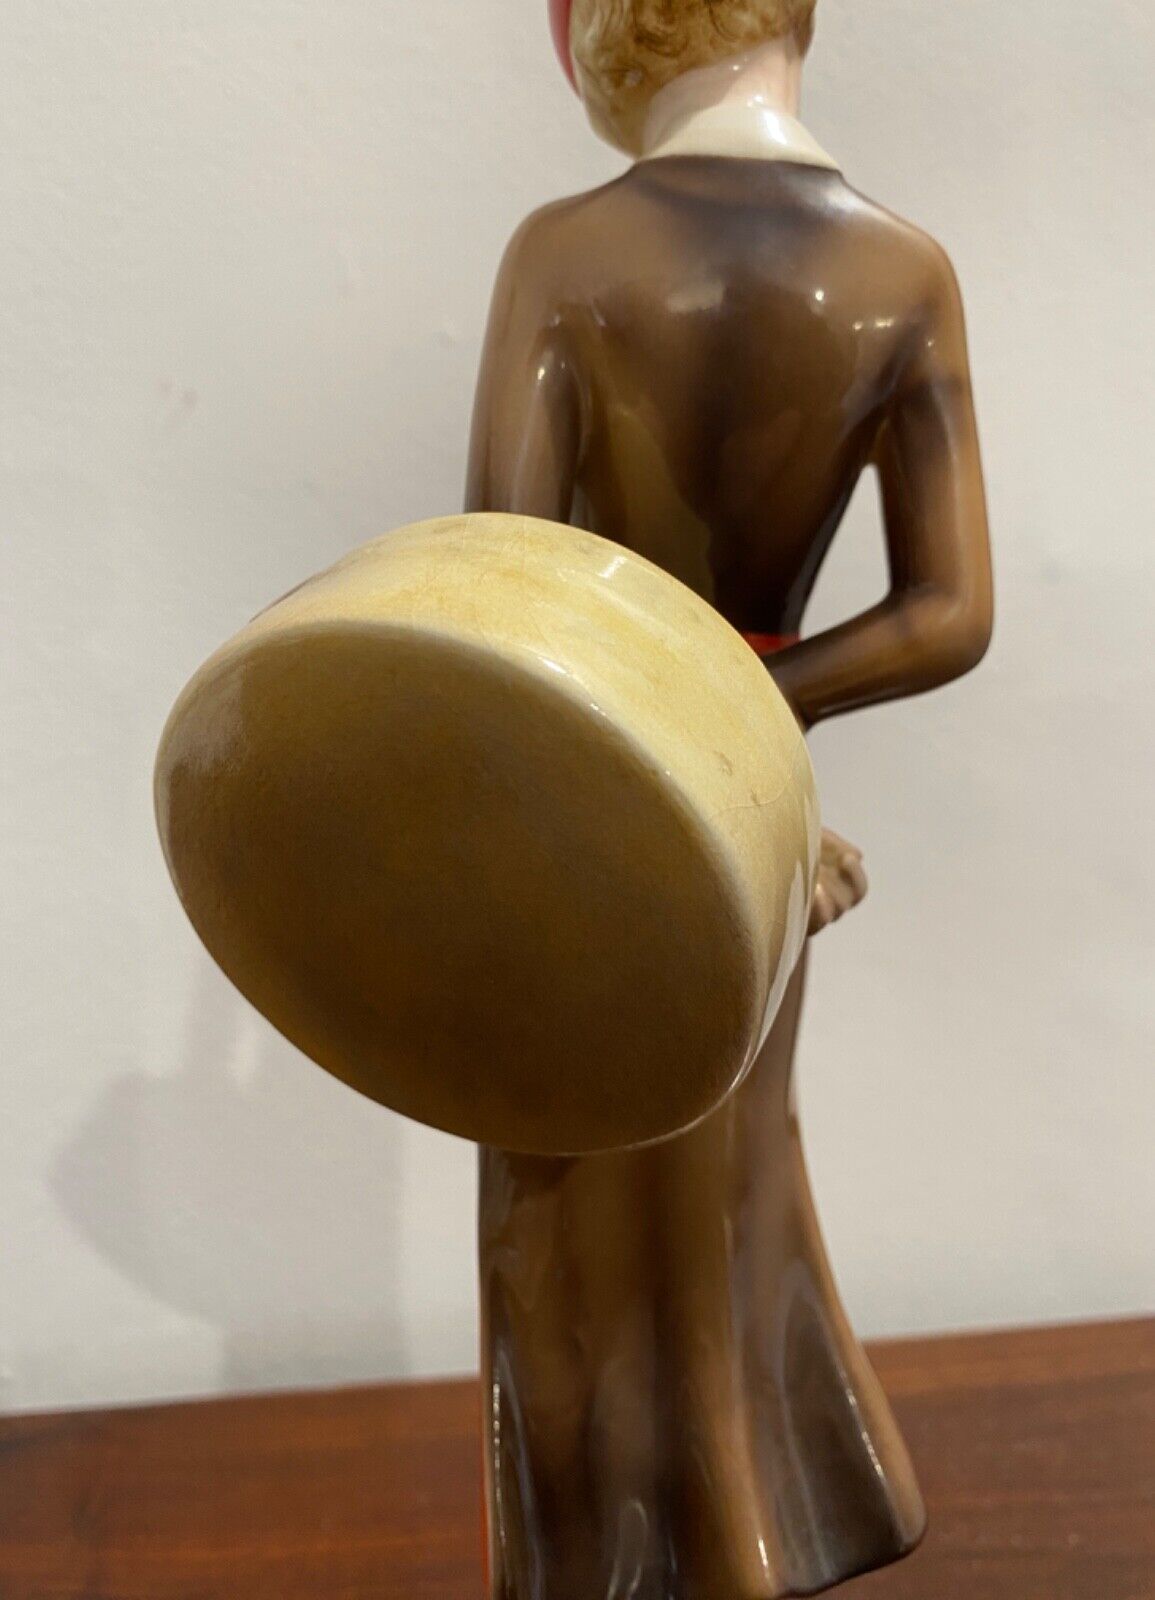 Statuetta di porcellana Goldscheider del XX secolo, figura di donna: immagine posteriore dell’opera